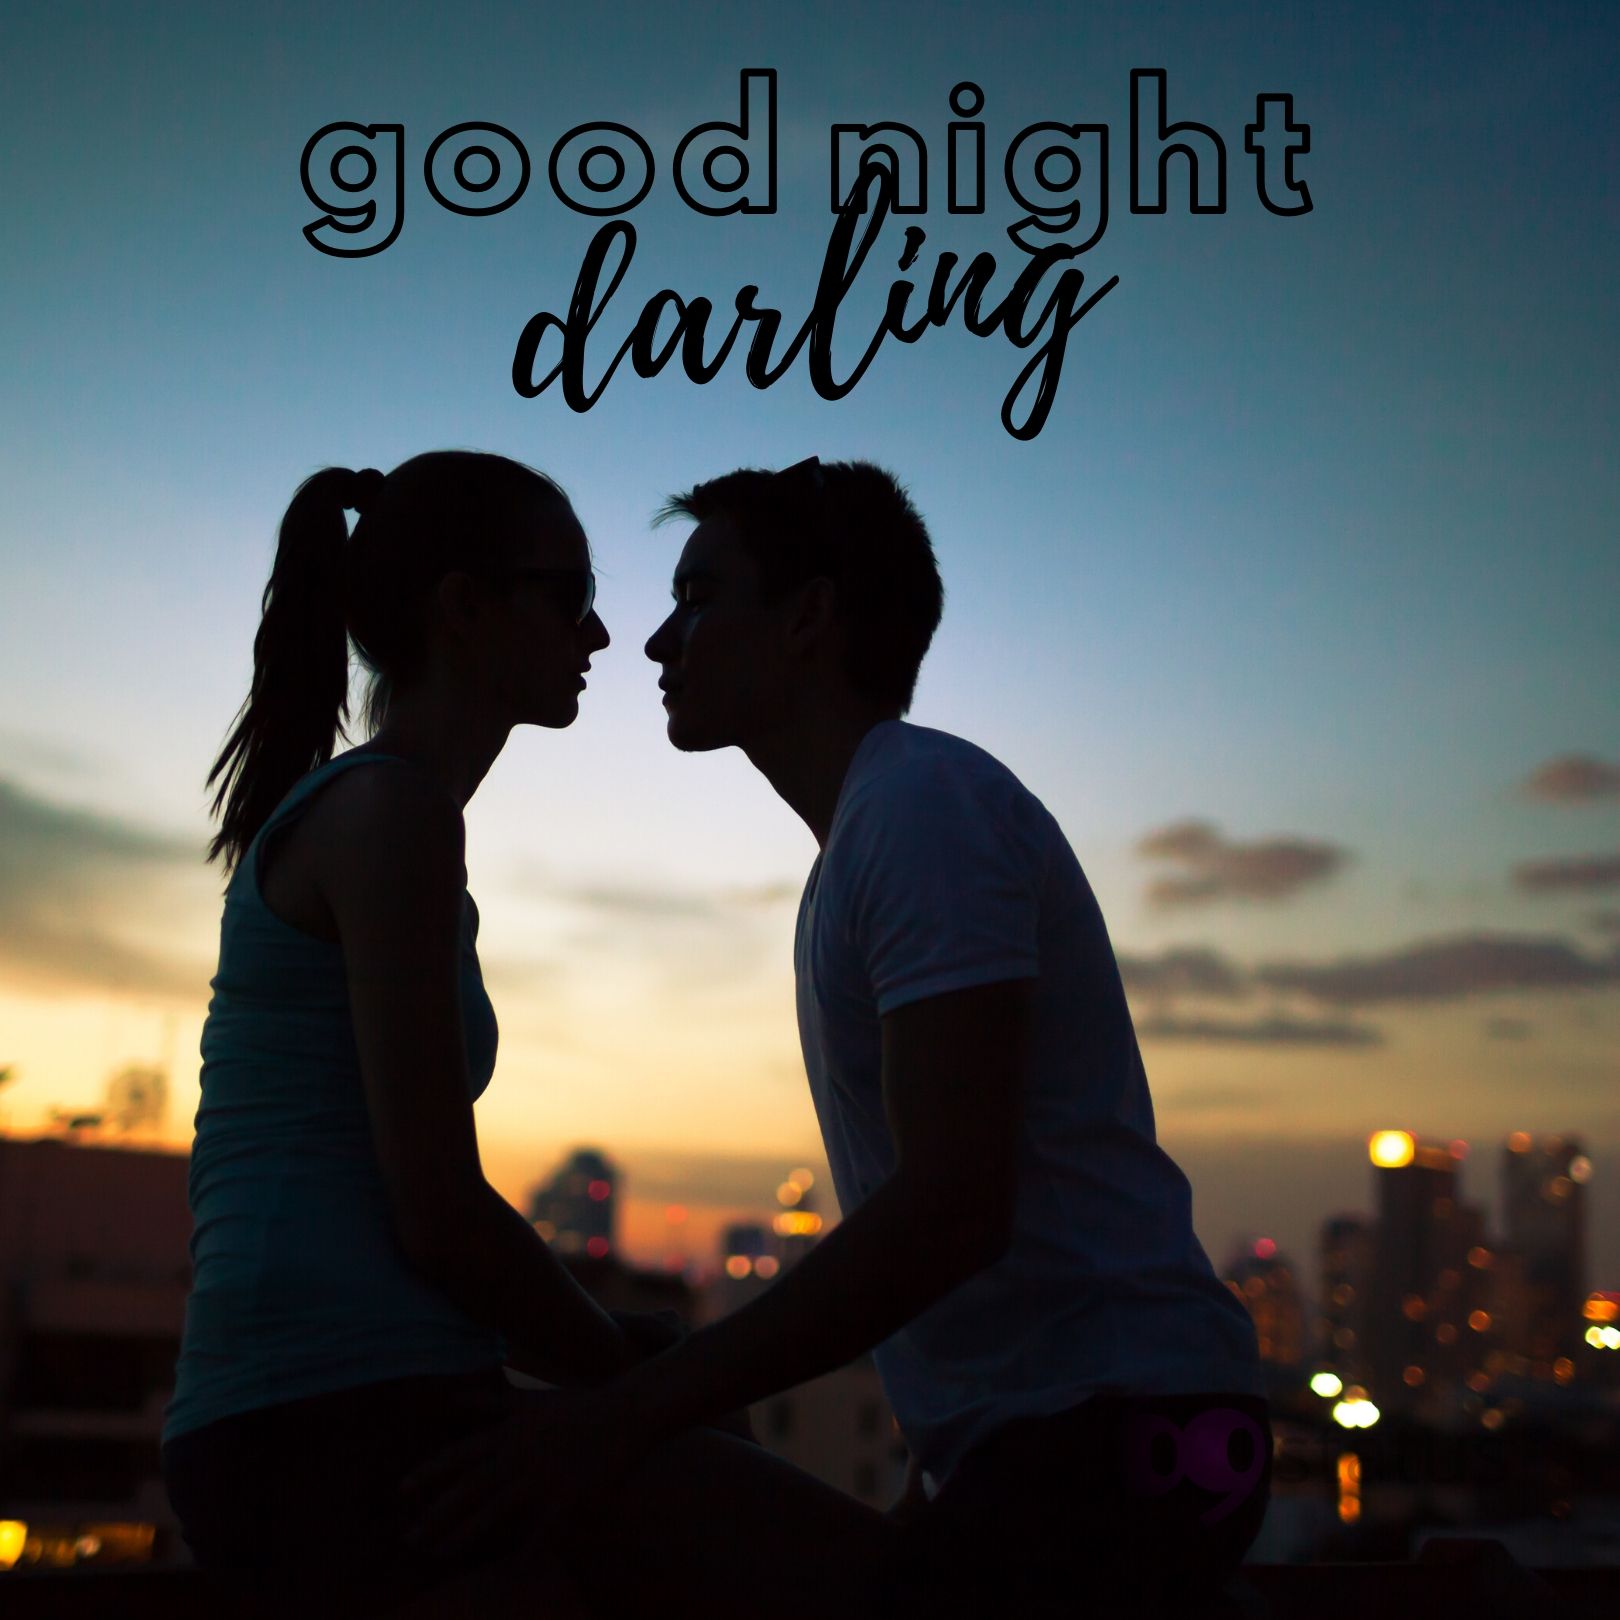 Good Night darling